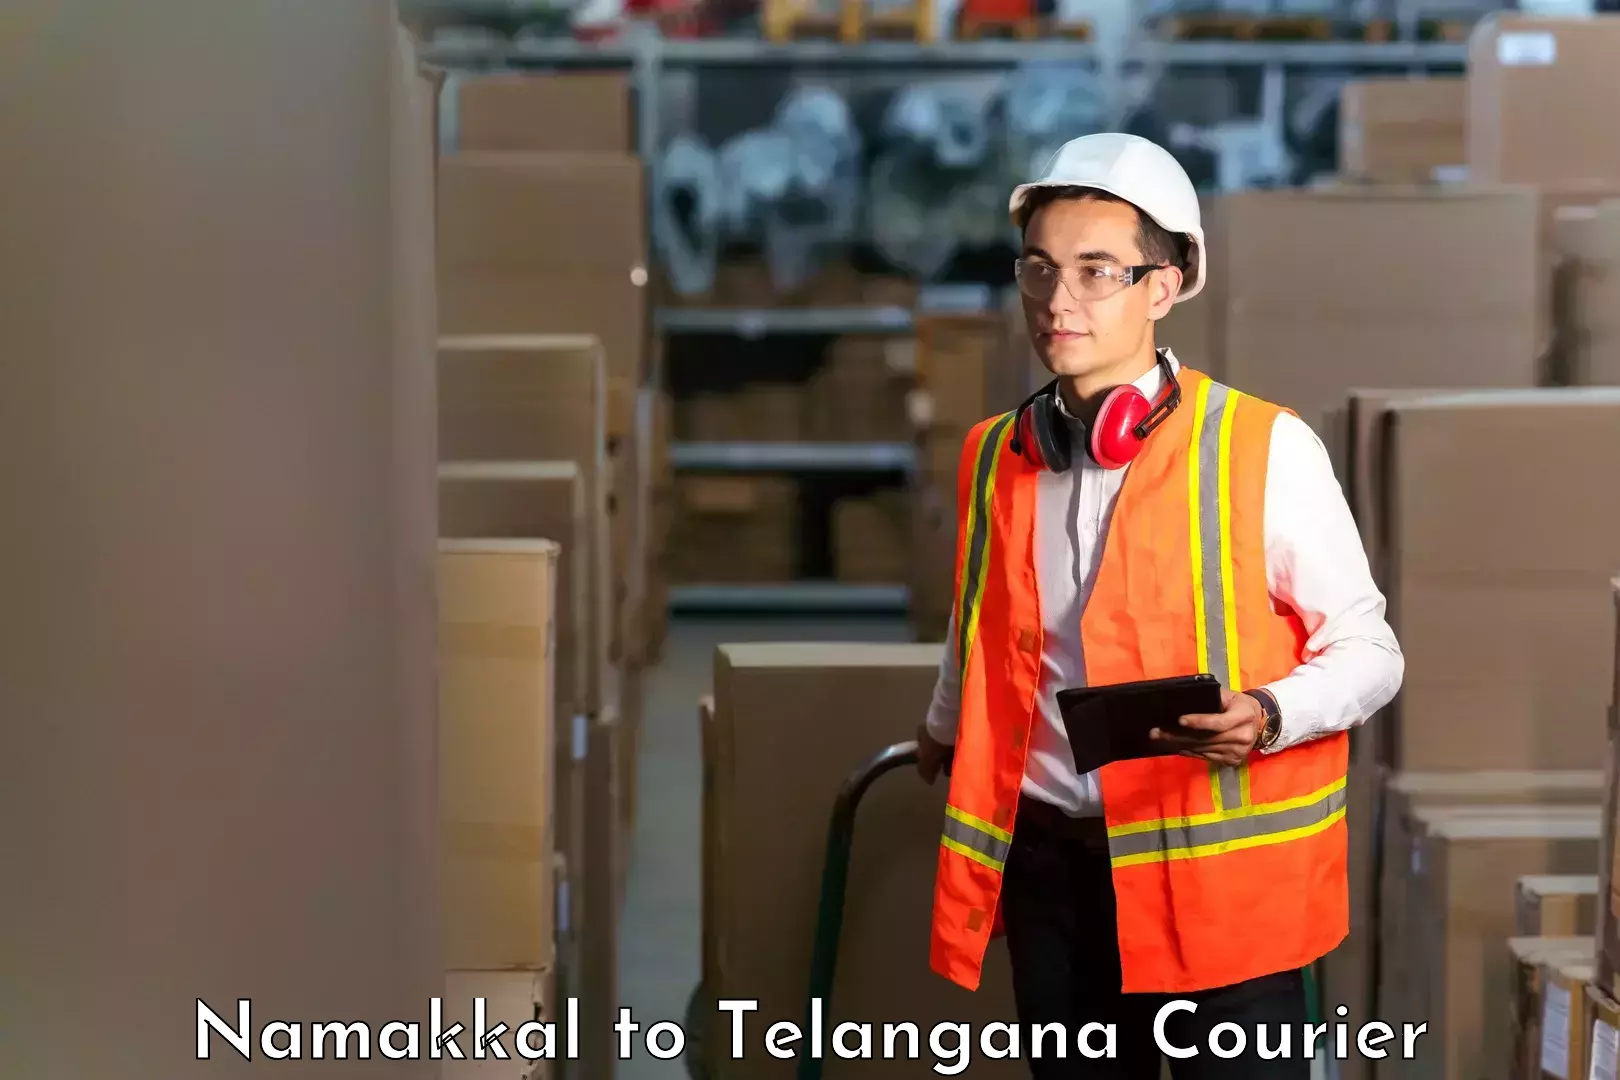 24/7 courier service Namakkal to Karimnagar